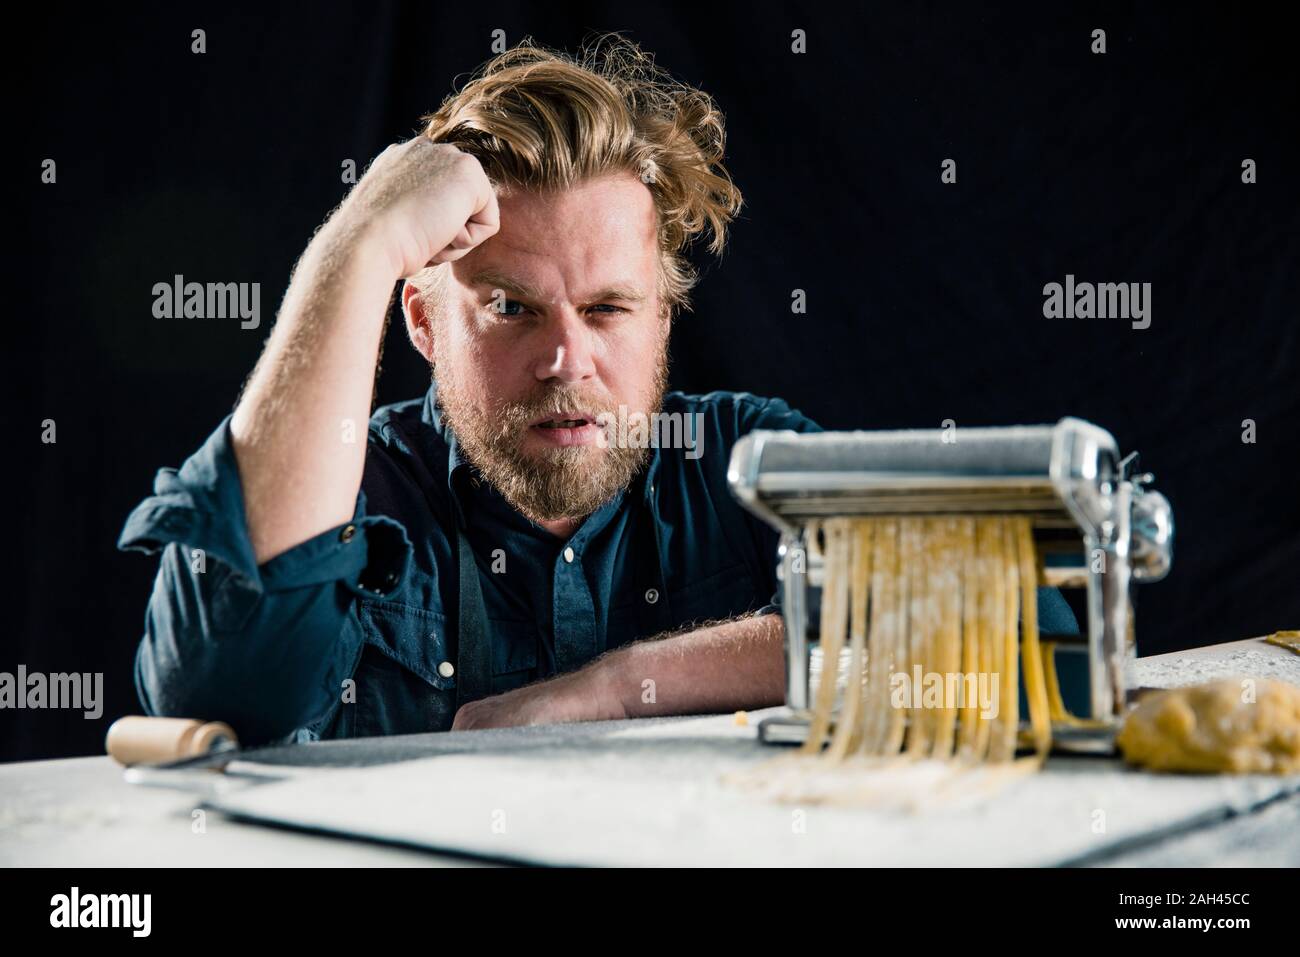 Cocinero haciendo Hobby tagliatelle frescos con máquina de pasta Foto de stock